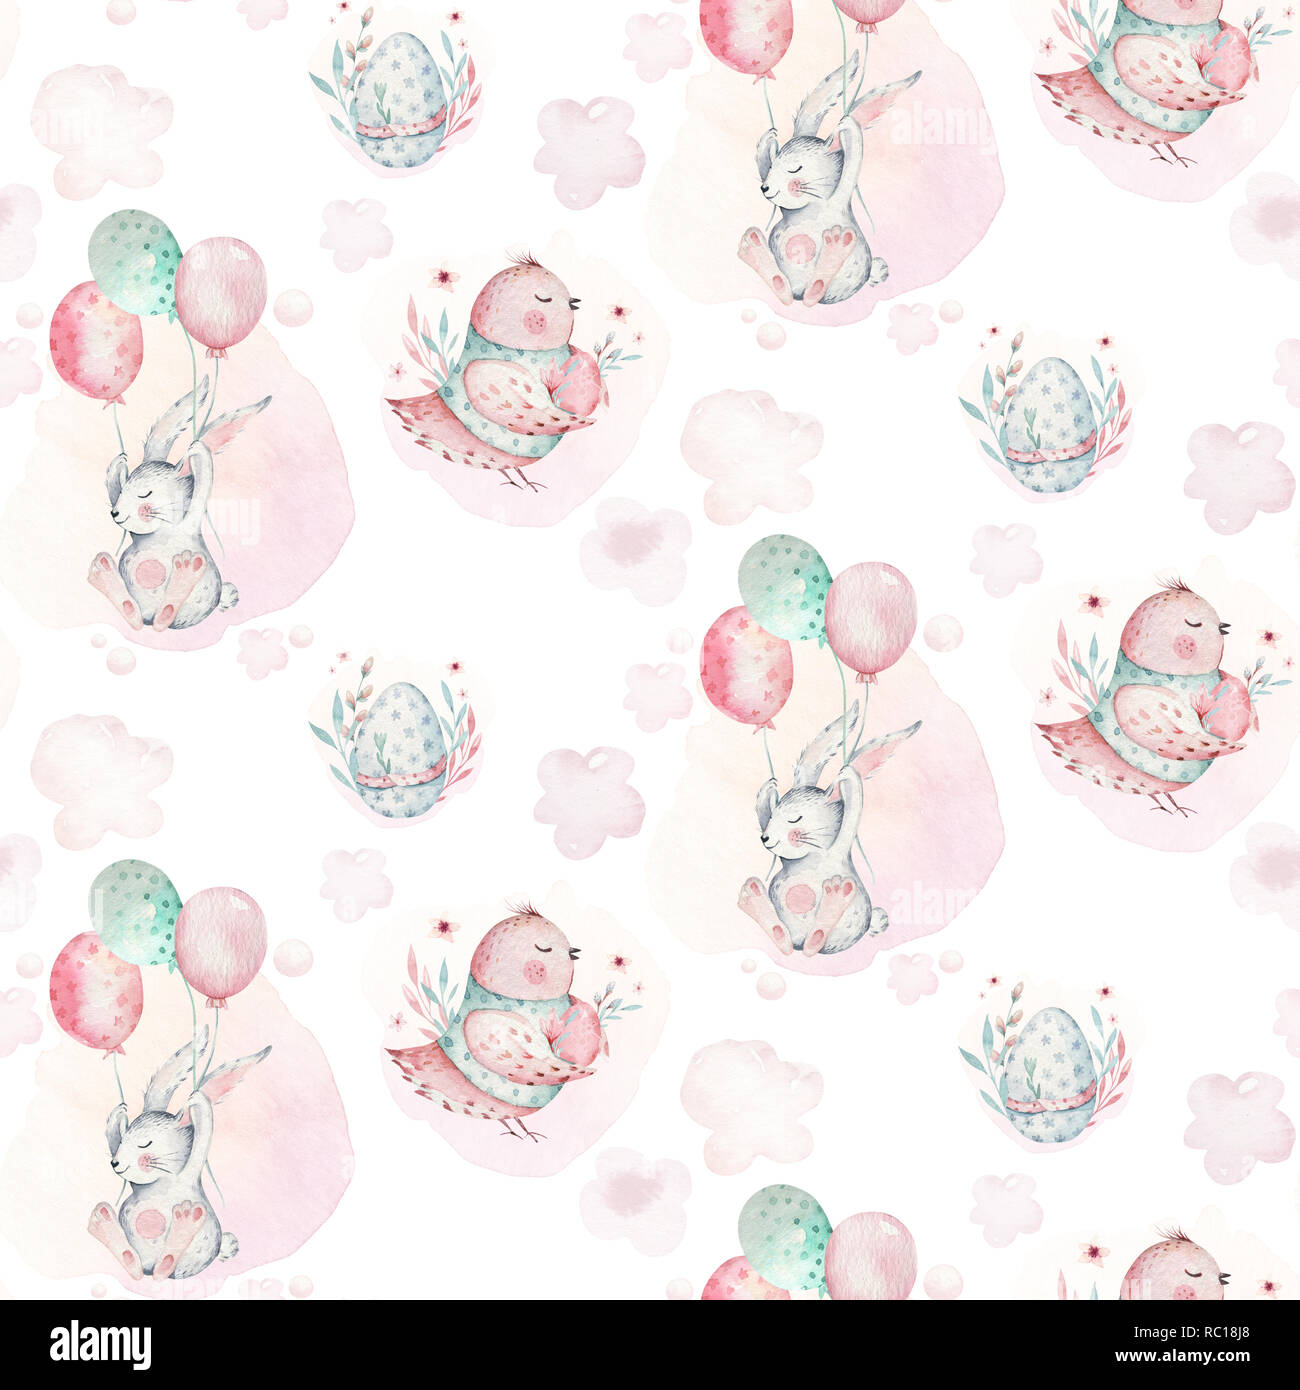 Un printemps aquarelle illustration de l'adorable bébé pâques bunny. Cartoon animal lapin rose transparente avec motif d'oiseaux et de ballon Banque D'Images